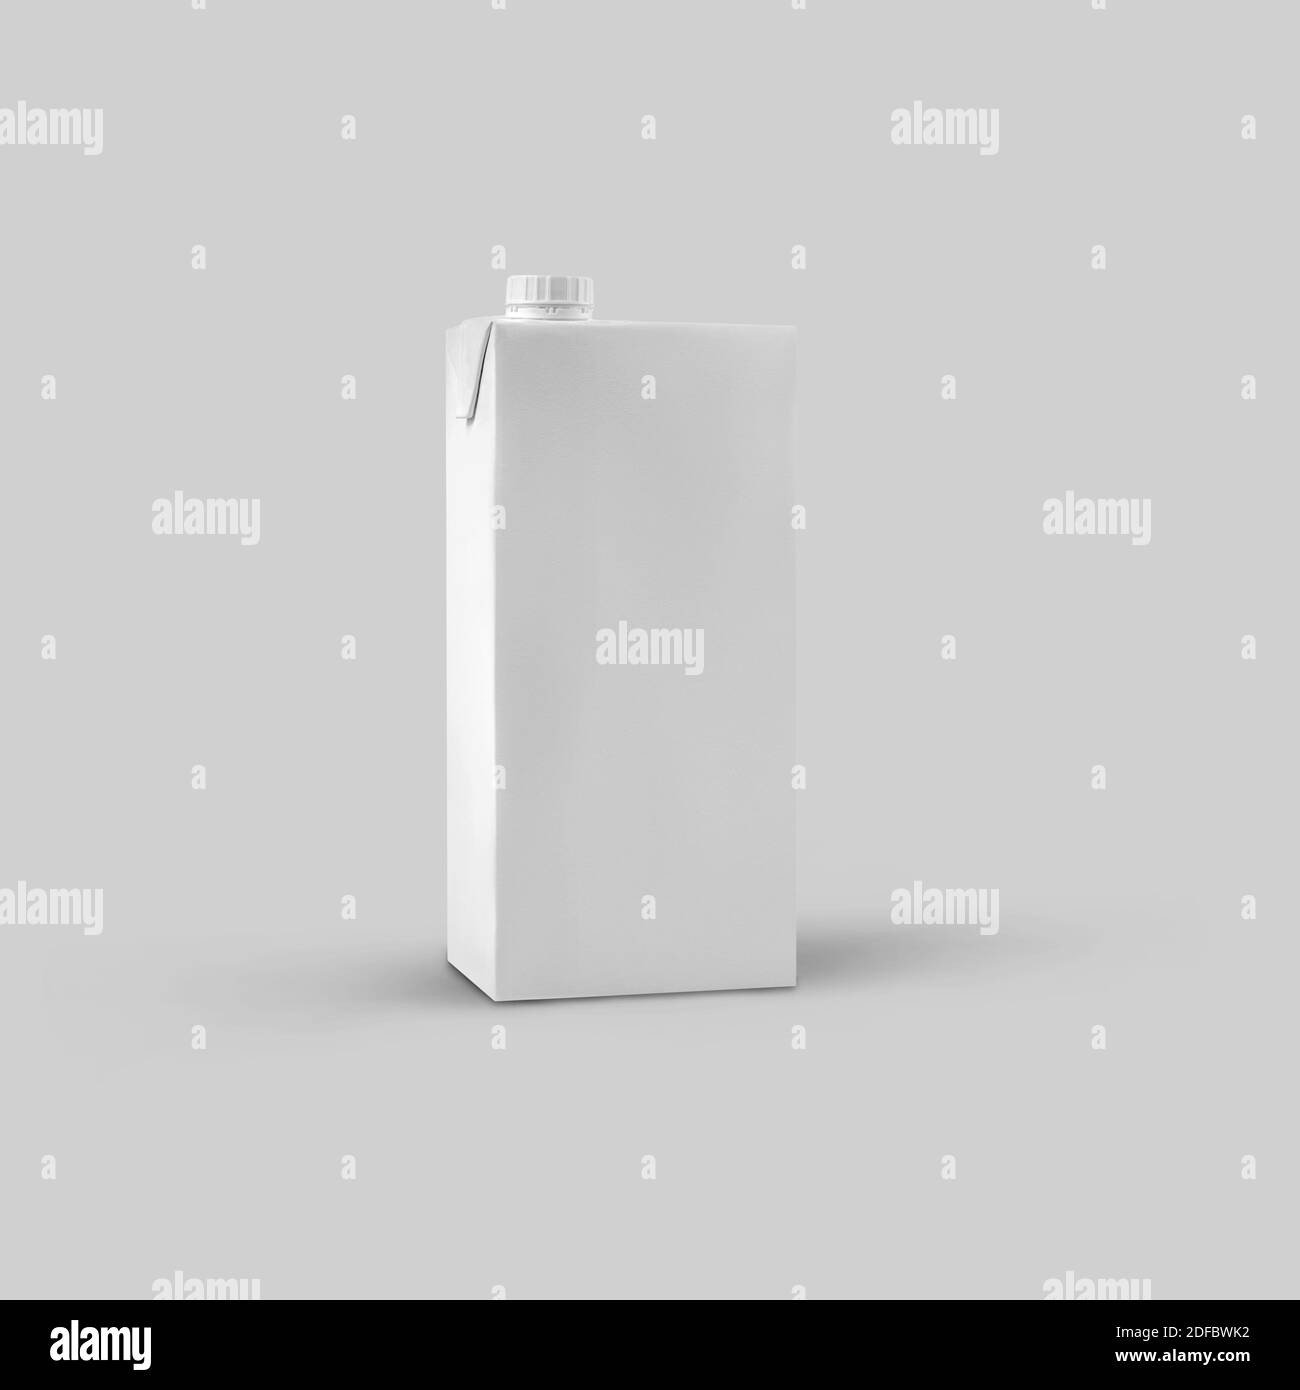 Maquette d'emballage en carton blanc propre pour le jus pour la présentation du design. Modèle d'un long paquet rectangulaire pour une boisson sur un fond isolé Banque D'Images